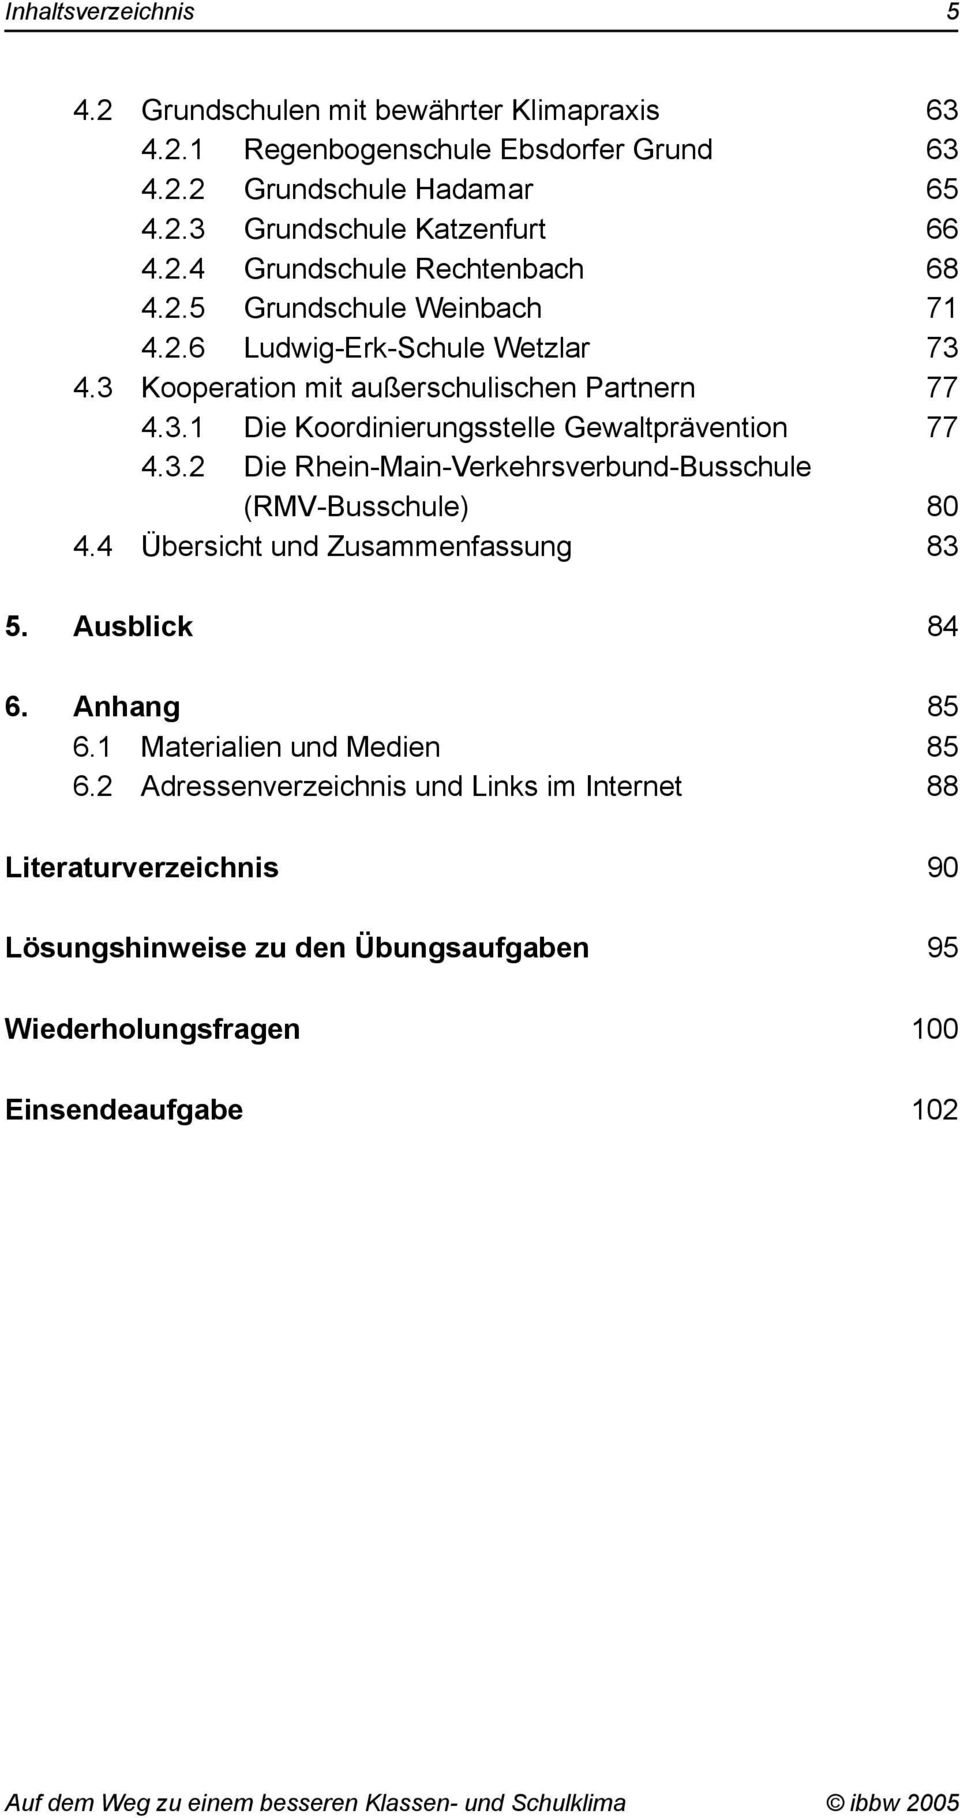 3.2 Die Rhein-Main-Verkehrsverbund-Busschule (RMV-Busschule) 80 4.4 Übersicht und Zusammenfassung 83 5. Ausblick 84 6. Anhang 85 6.1 Materialien und Medien 85 6.